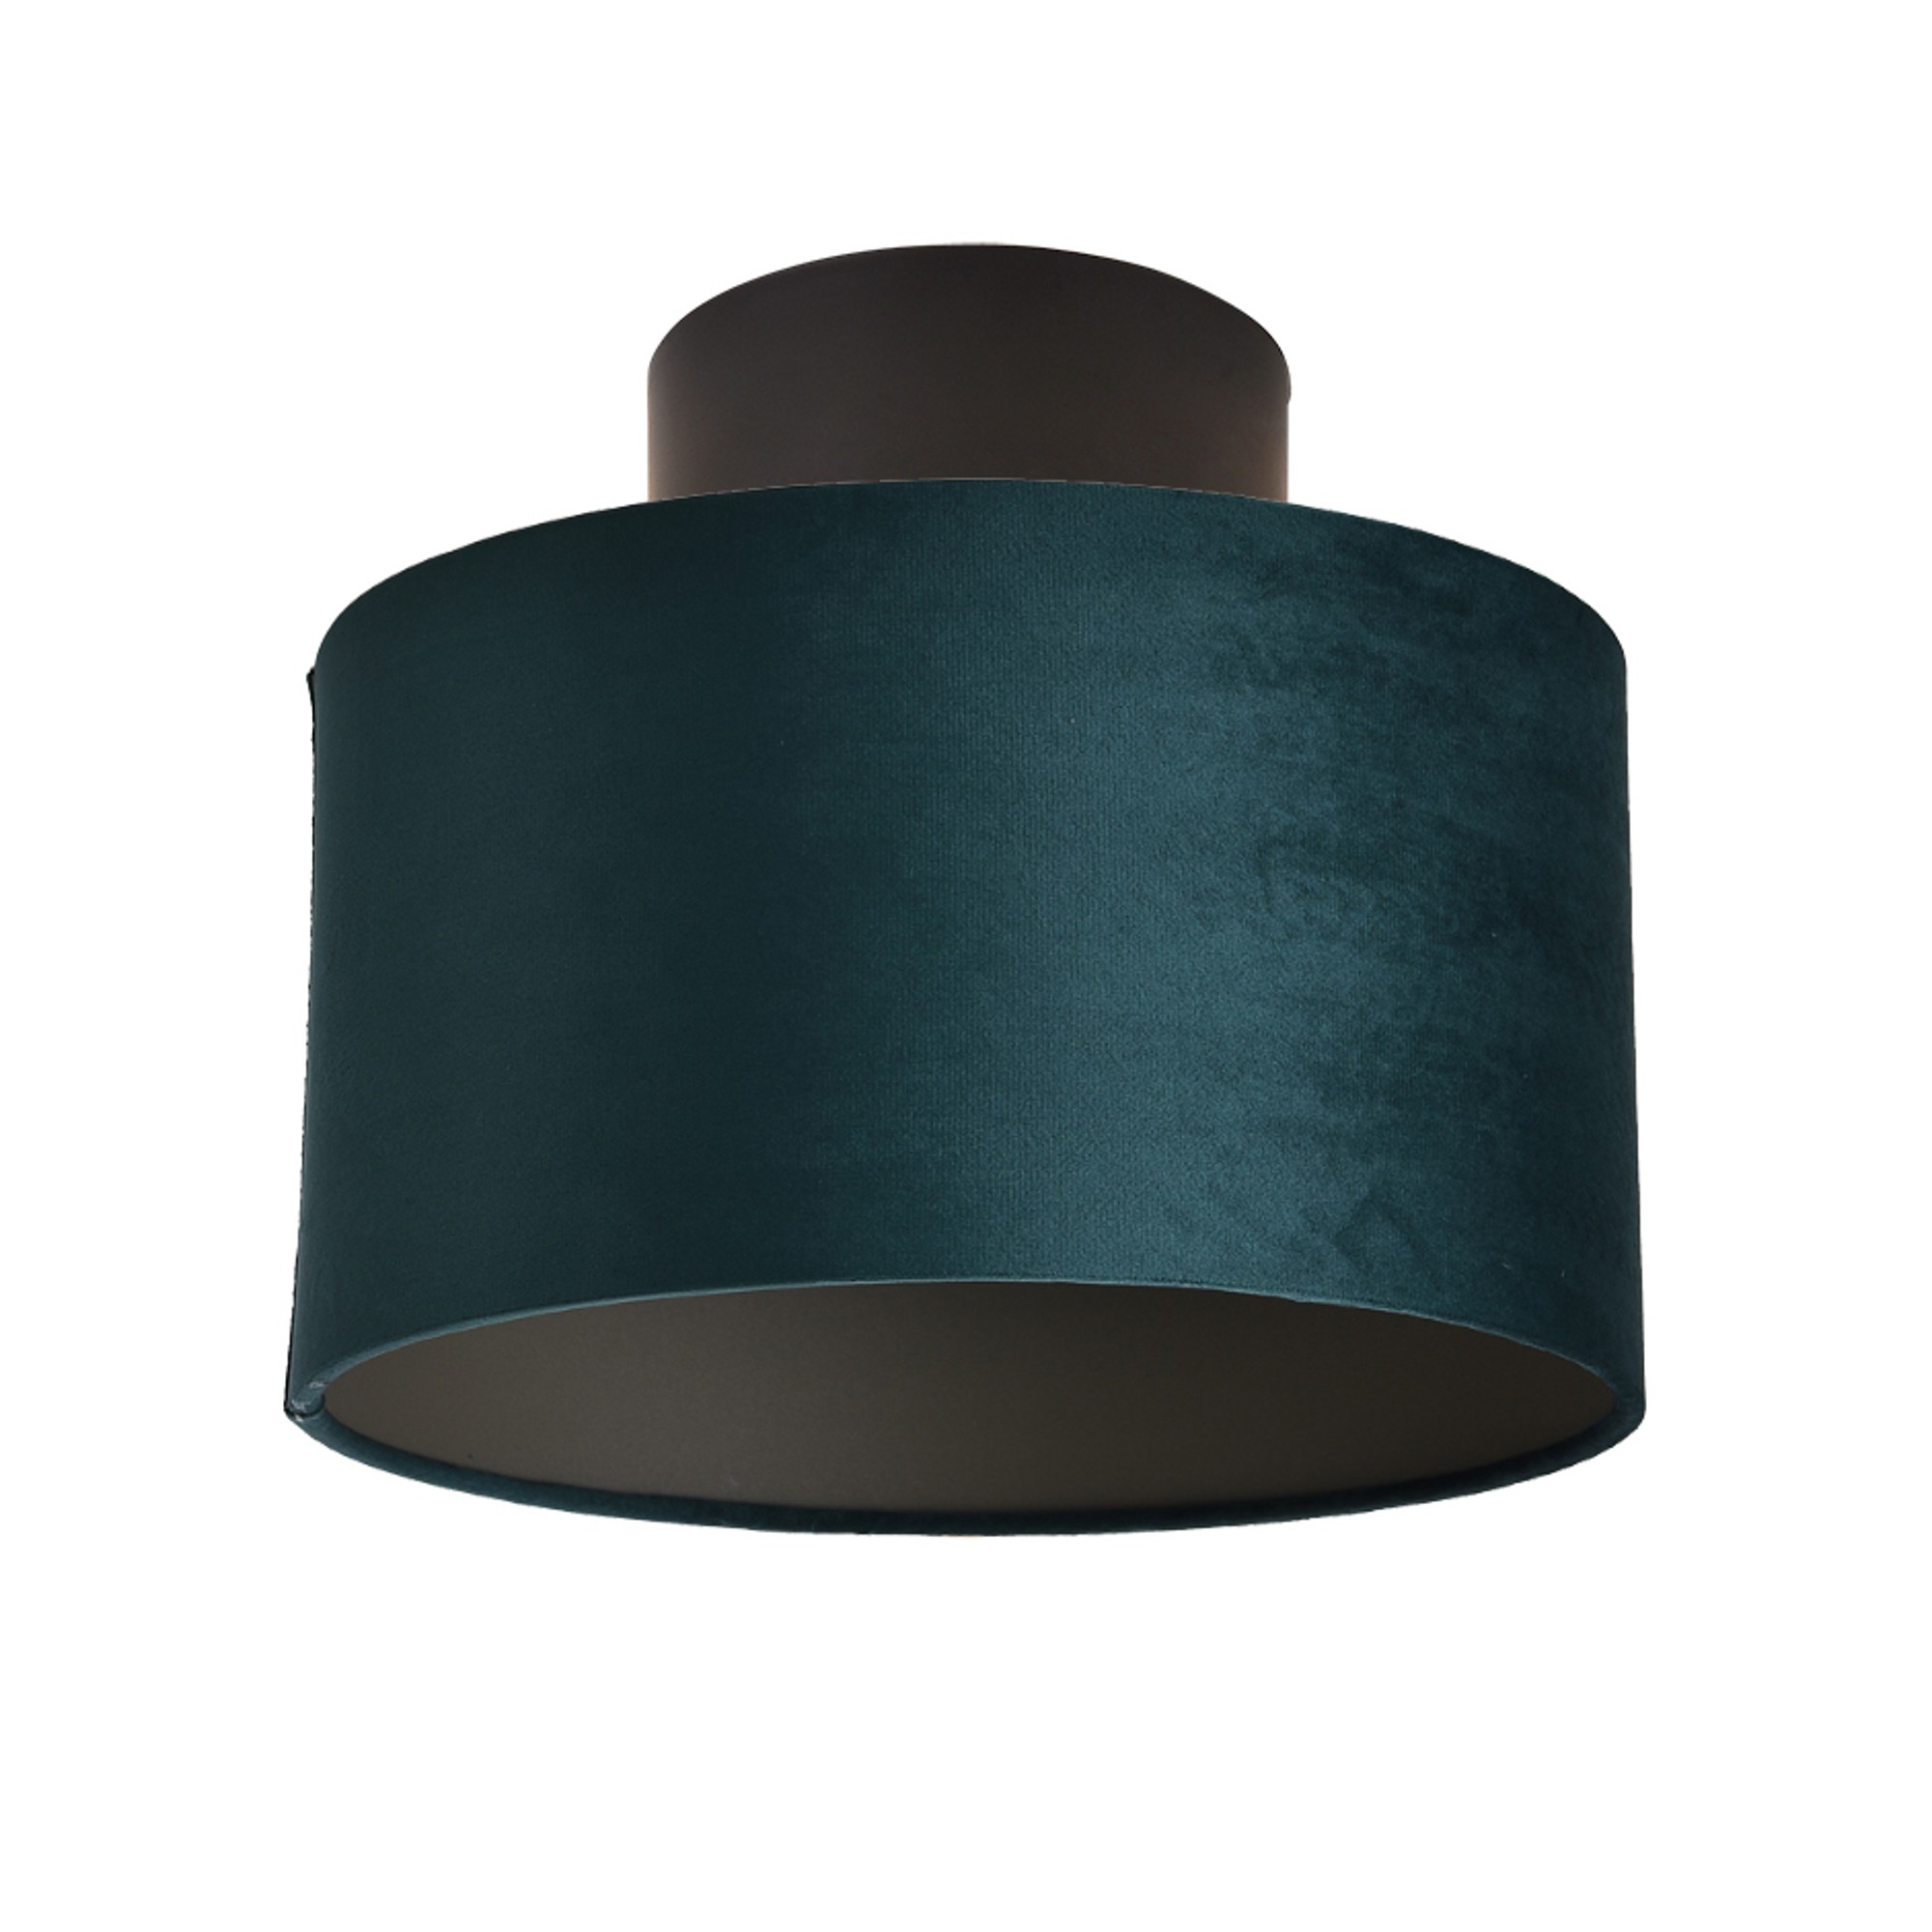 Ceiling lamp FocusLight GEM 30cm, 1xE27, green